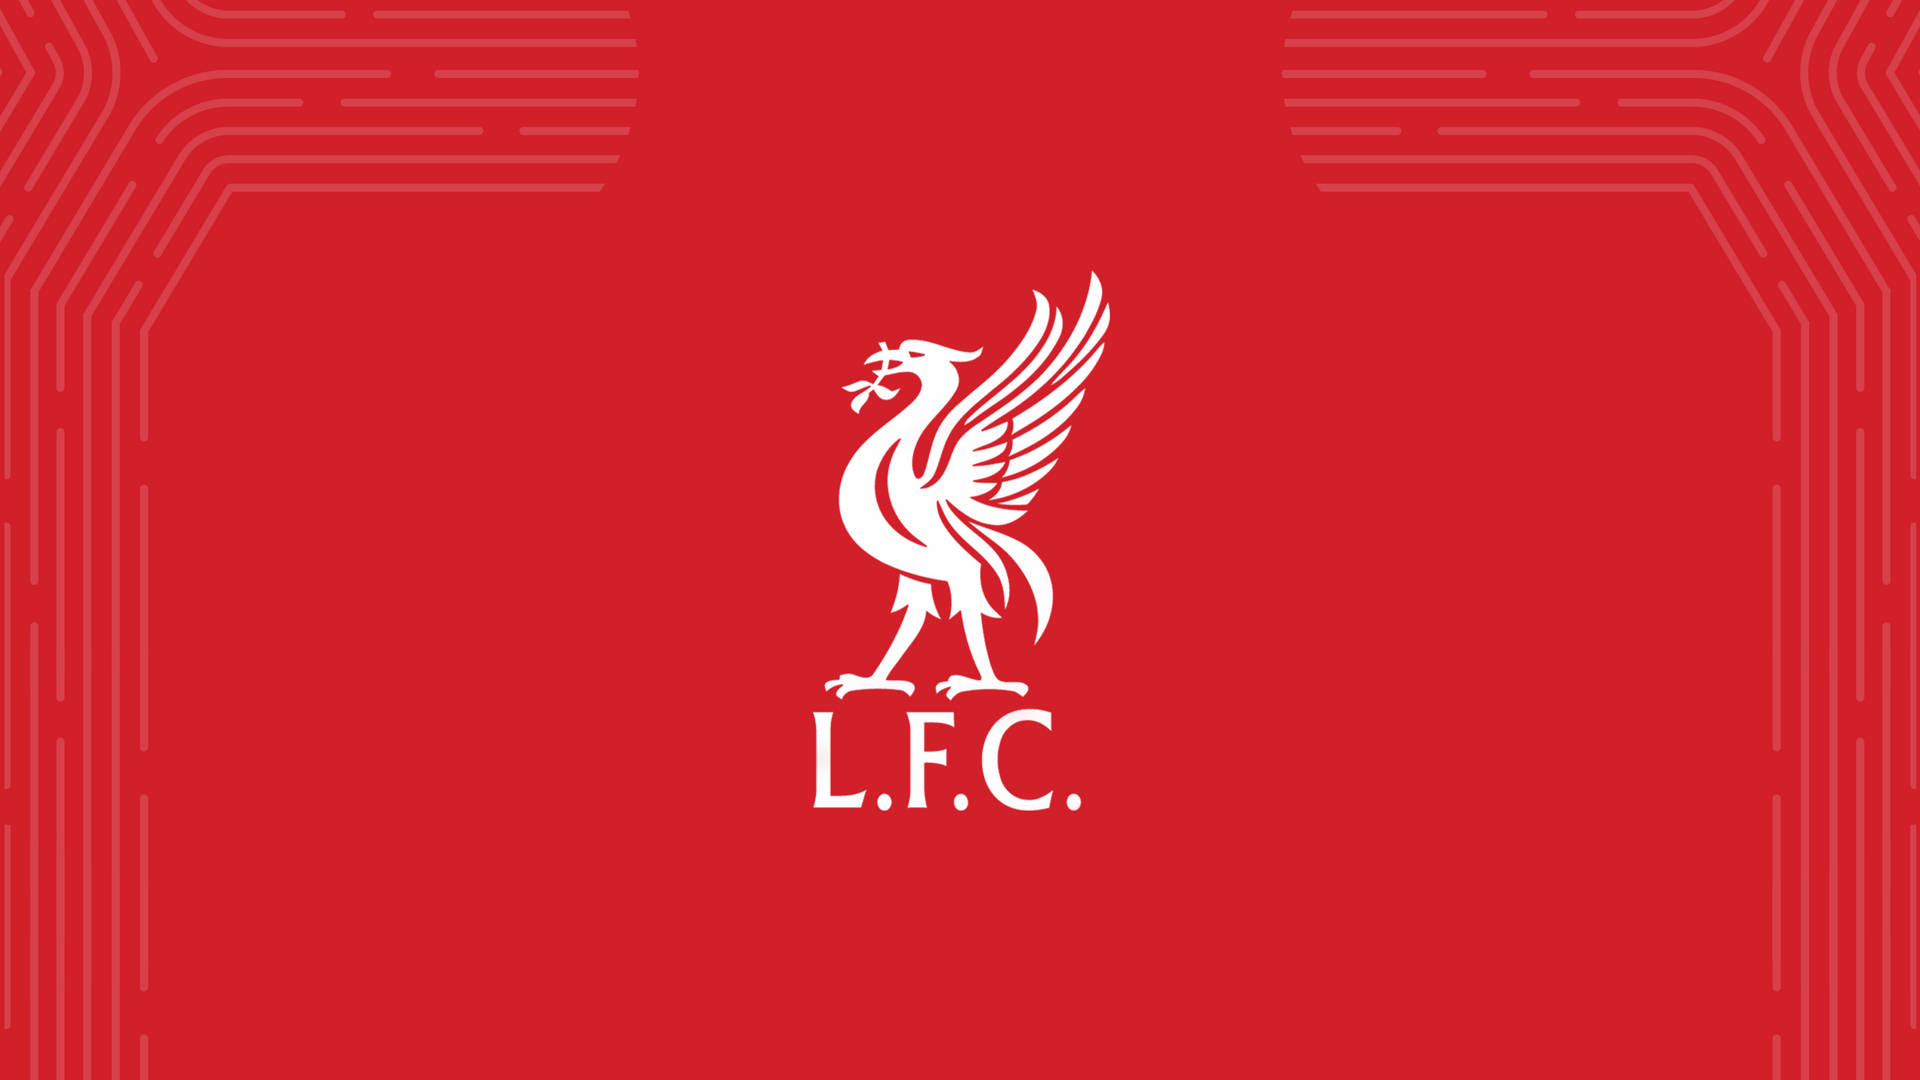 Liverpool Fc L.f.c.